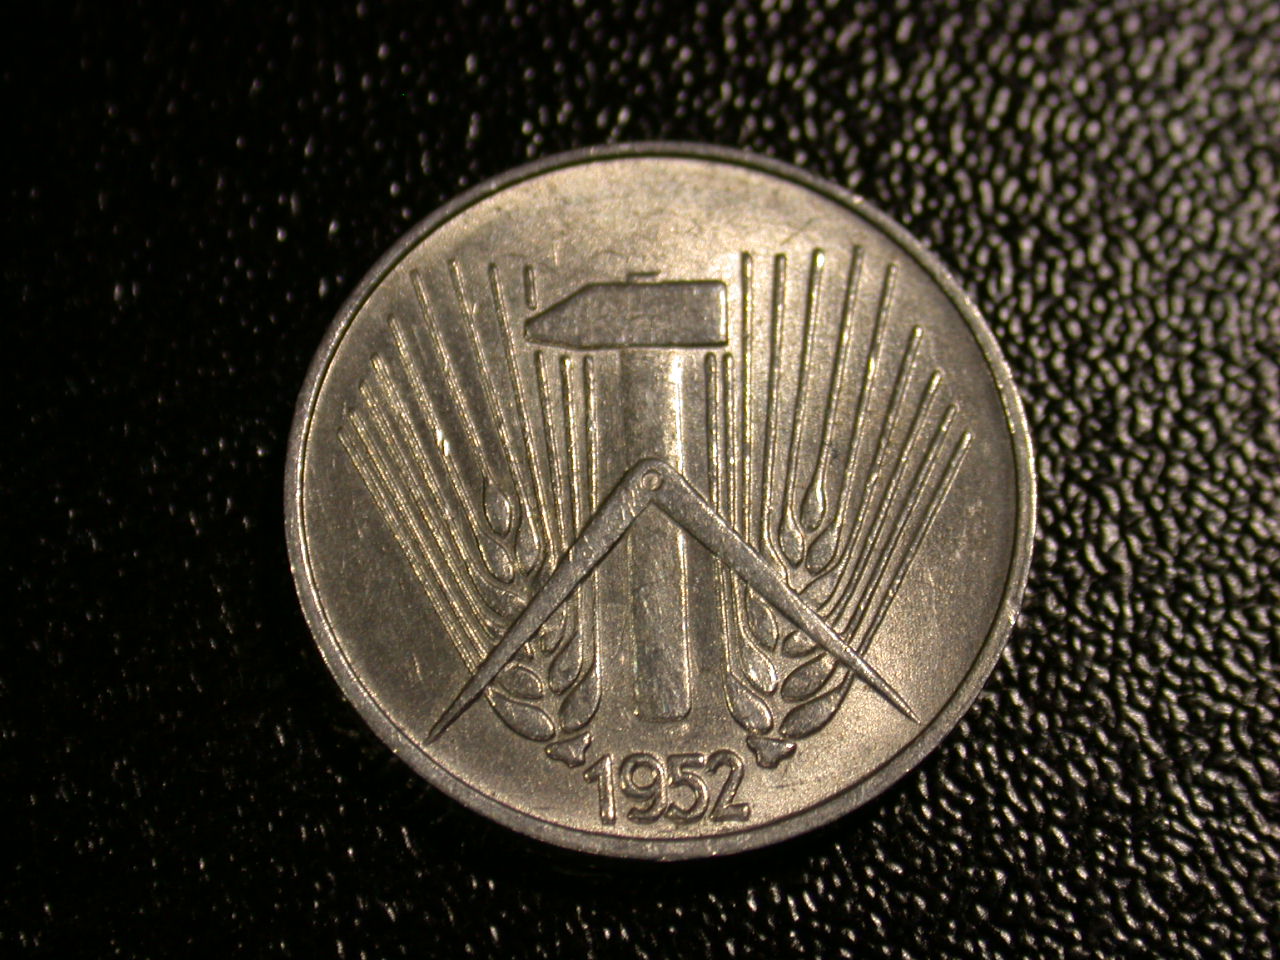  12045  DDR   1 Pfennig  1952 E  in vz/vz-st   